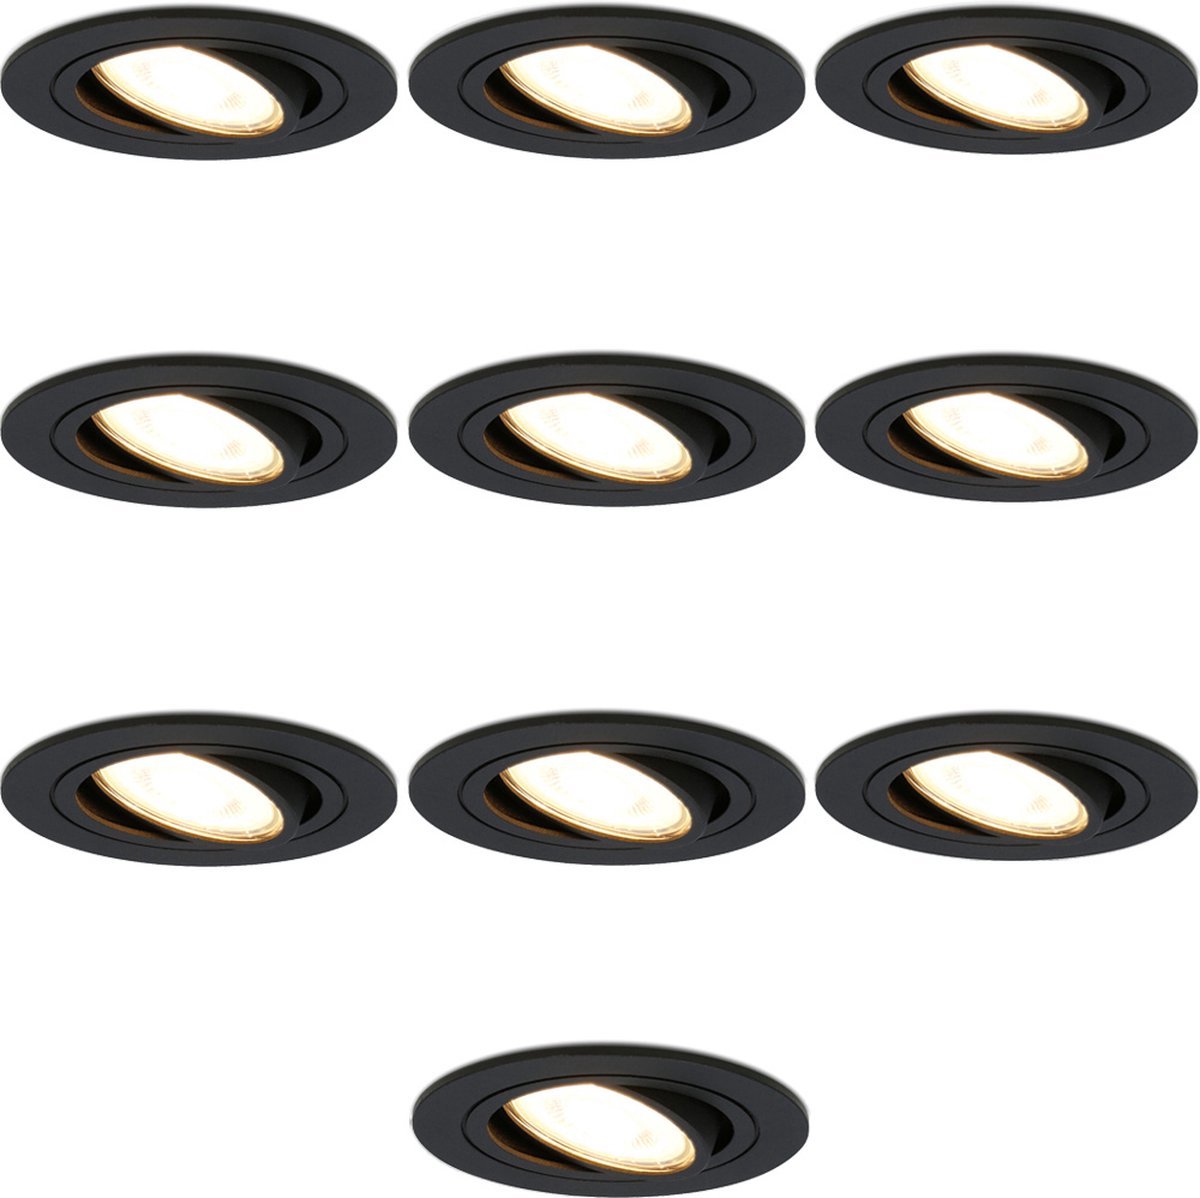 10x HOFTRONIC - LED Inbouwspots - Zwart - 2700K warm wit - 350 lumen - 5 Watt - Dimbaar en kantelbaar - GU10 - IP20 - Ronde plafondspots (Ø75 mm) - Spotjes verlichting - voor woonkamer, gang en slaapkamer - HOFTRONIC